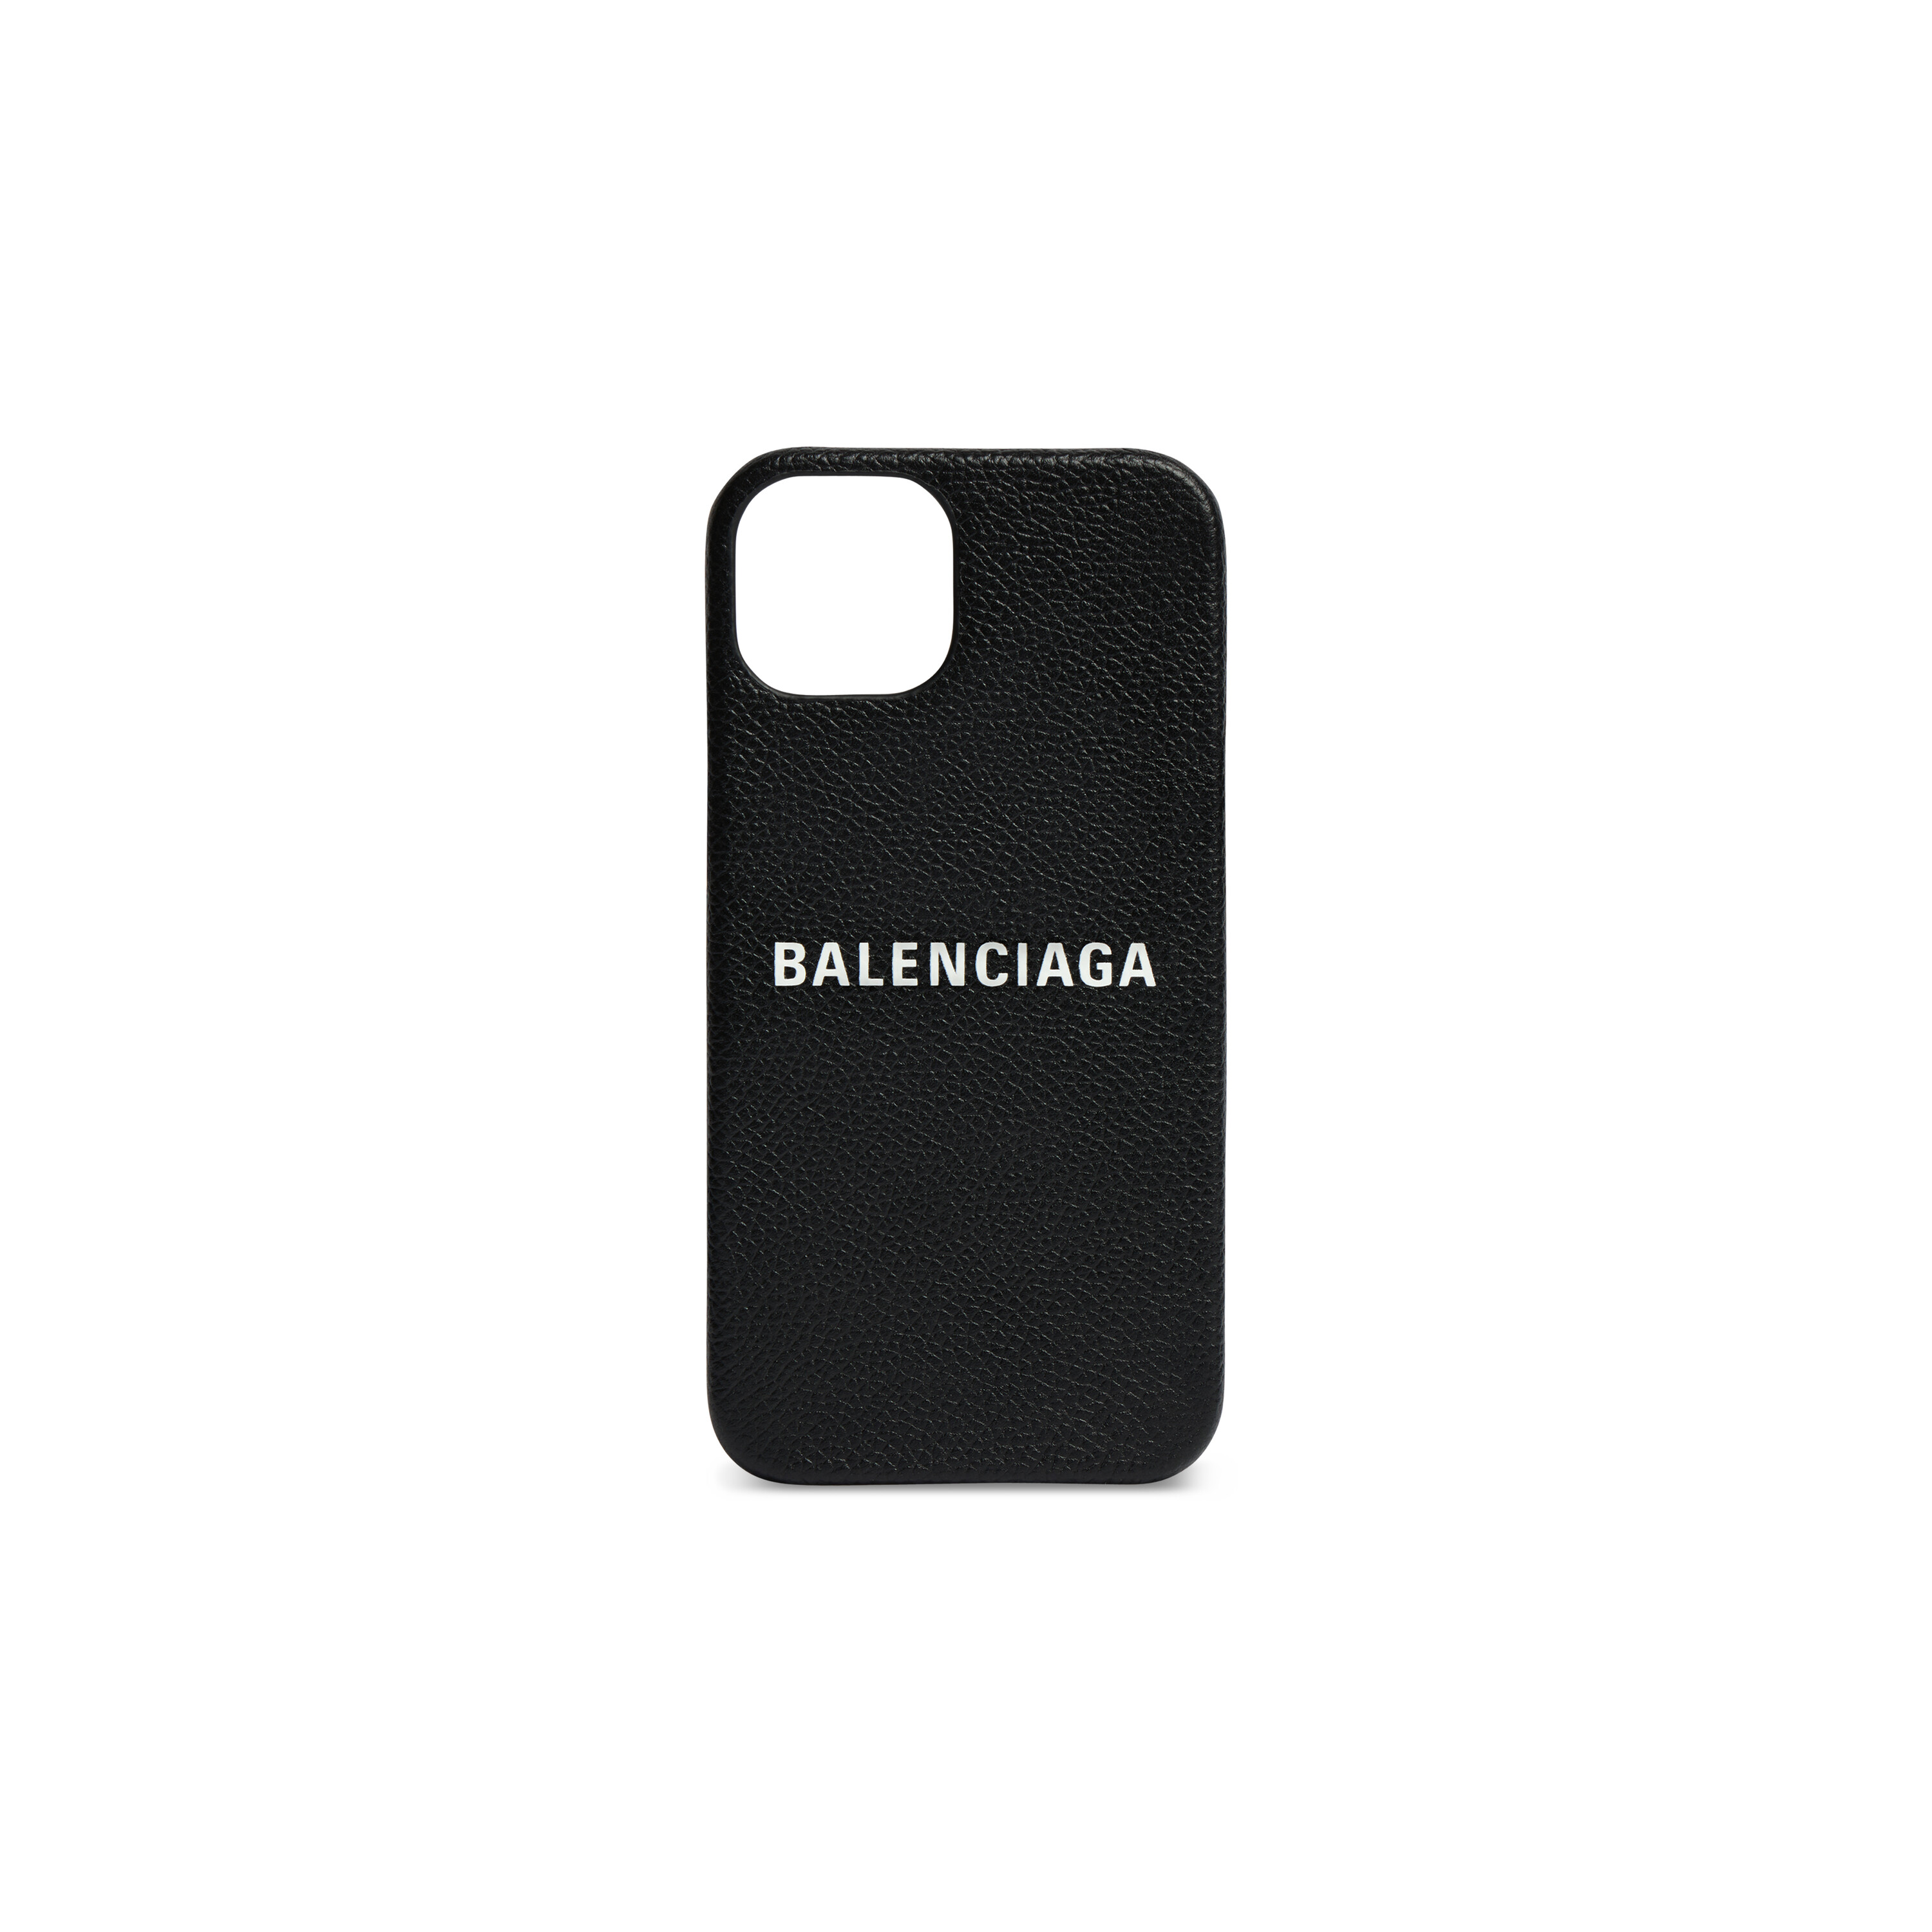 BALENCIAGA グレインレザー iPhone11 Pro Max ケース - モバイルケース